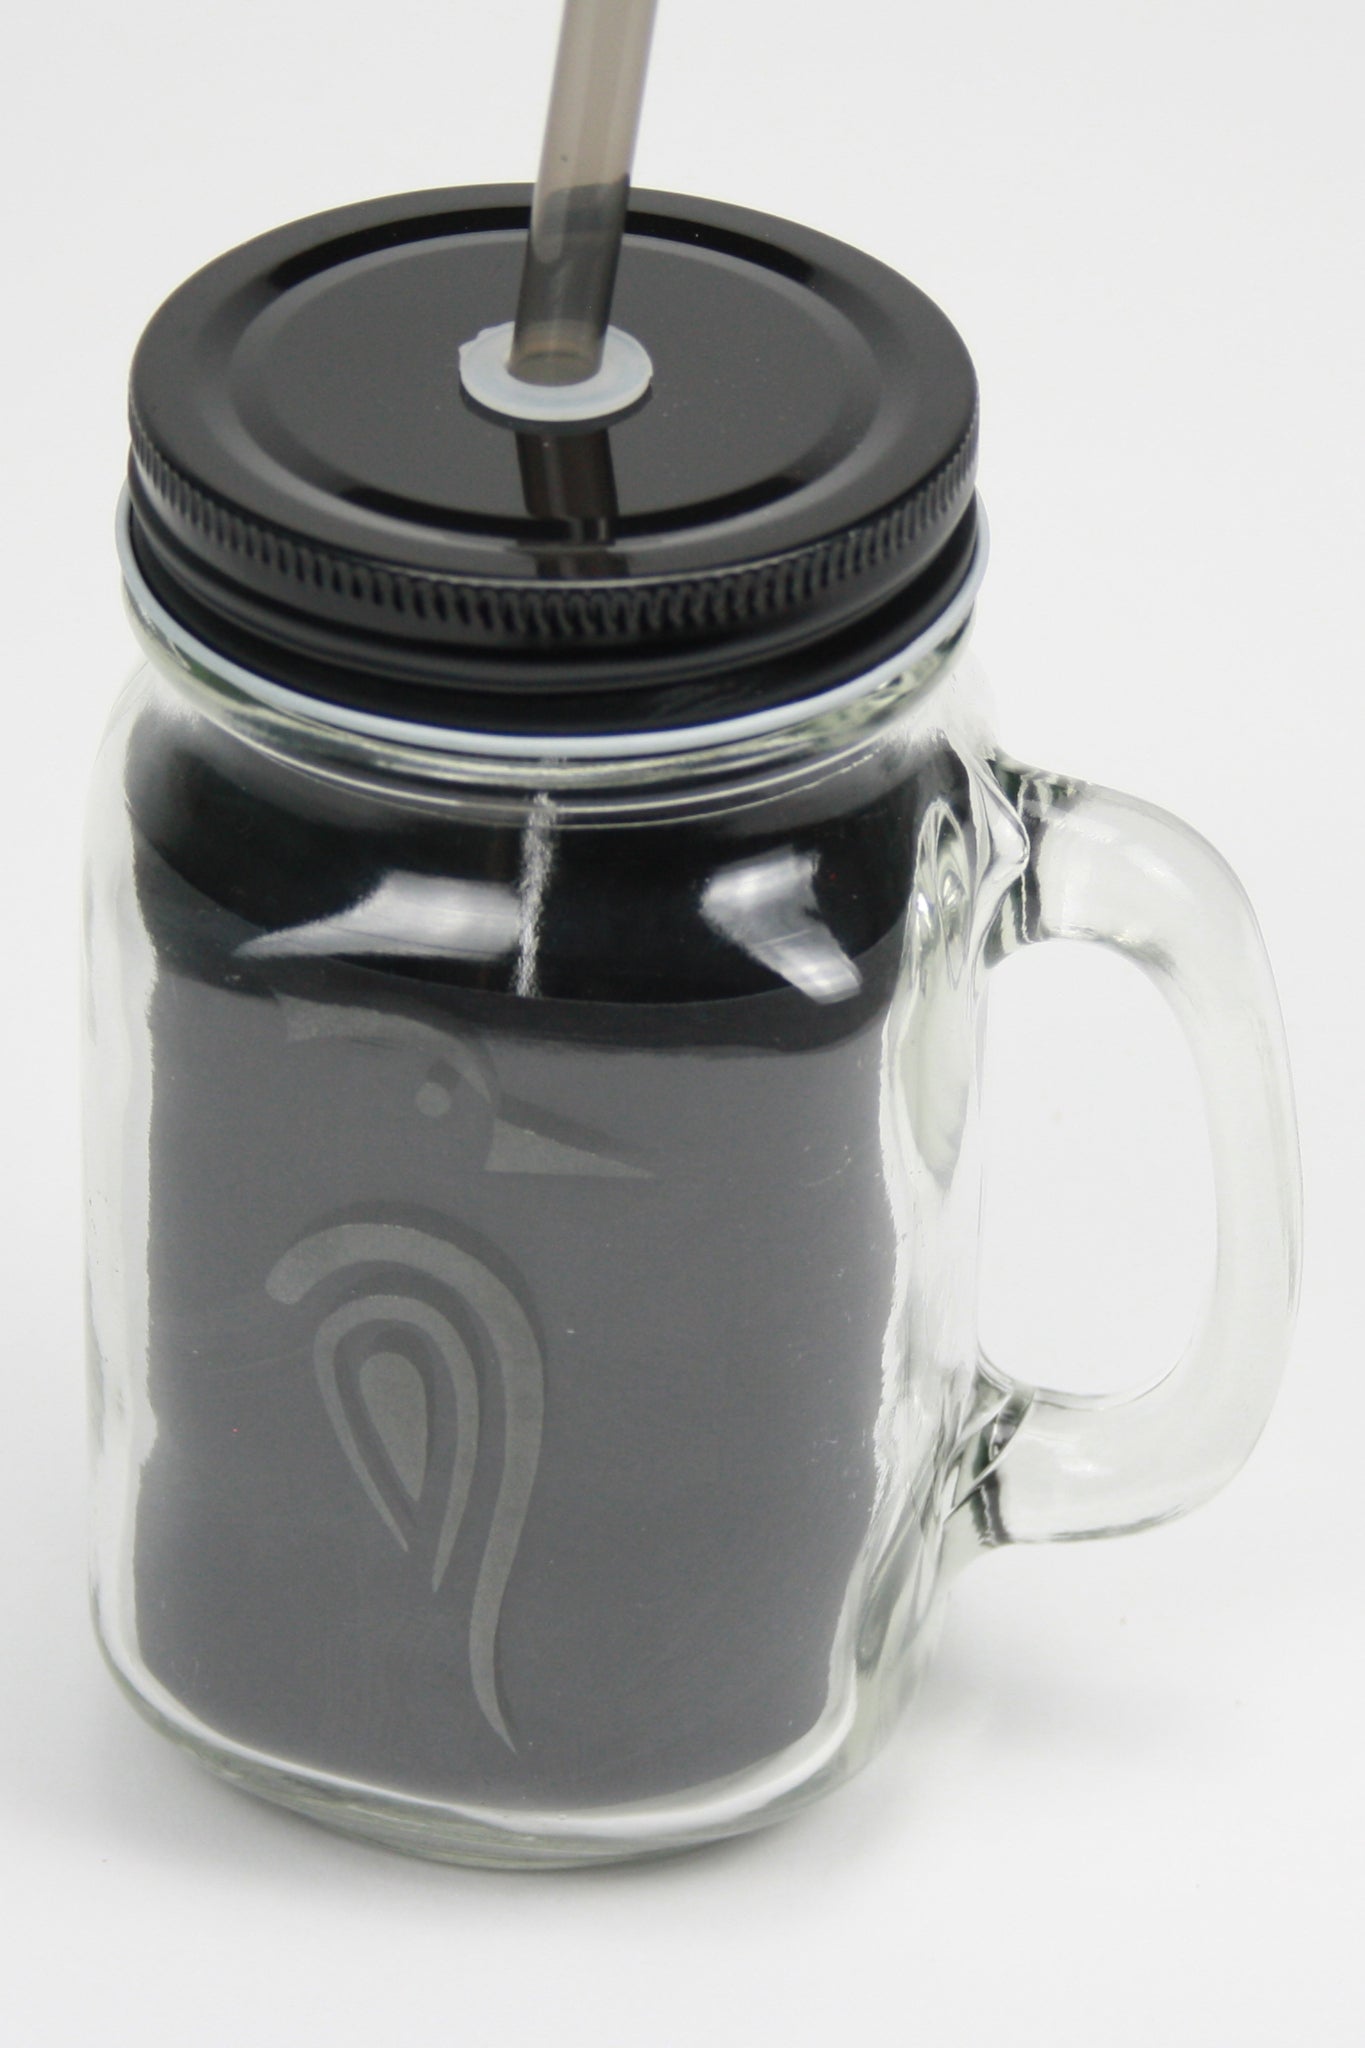 Nieuwe trendy glazen drinkbokaal met deksel en rietje, perfect voor personalisatie. Inhoud: 500 ml.